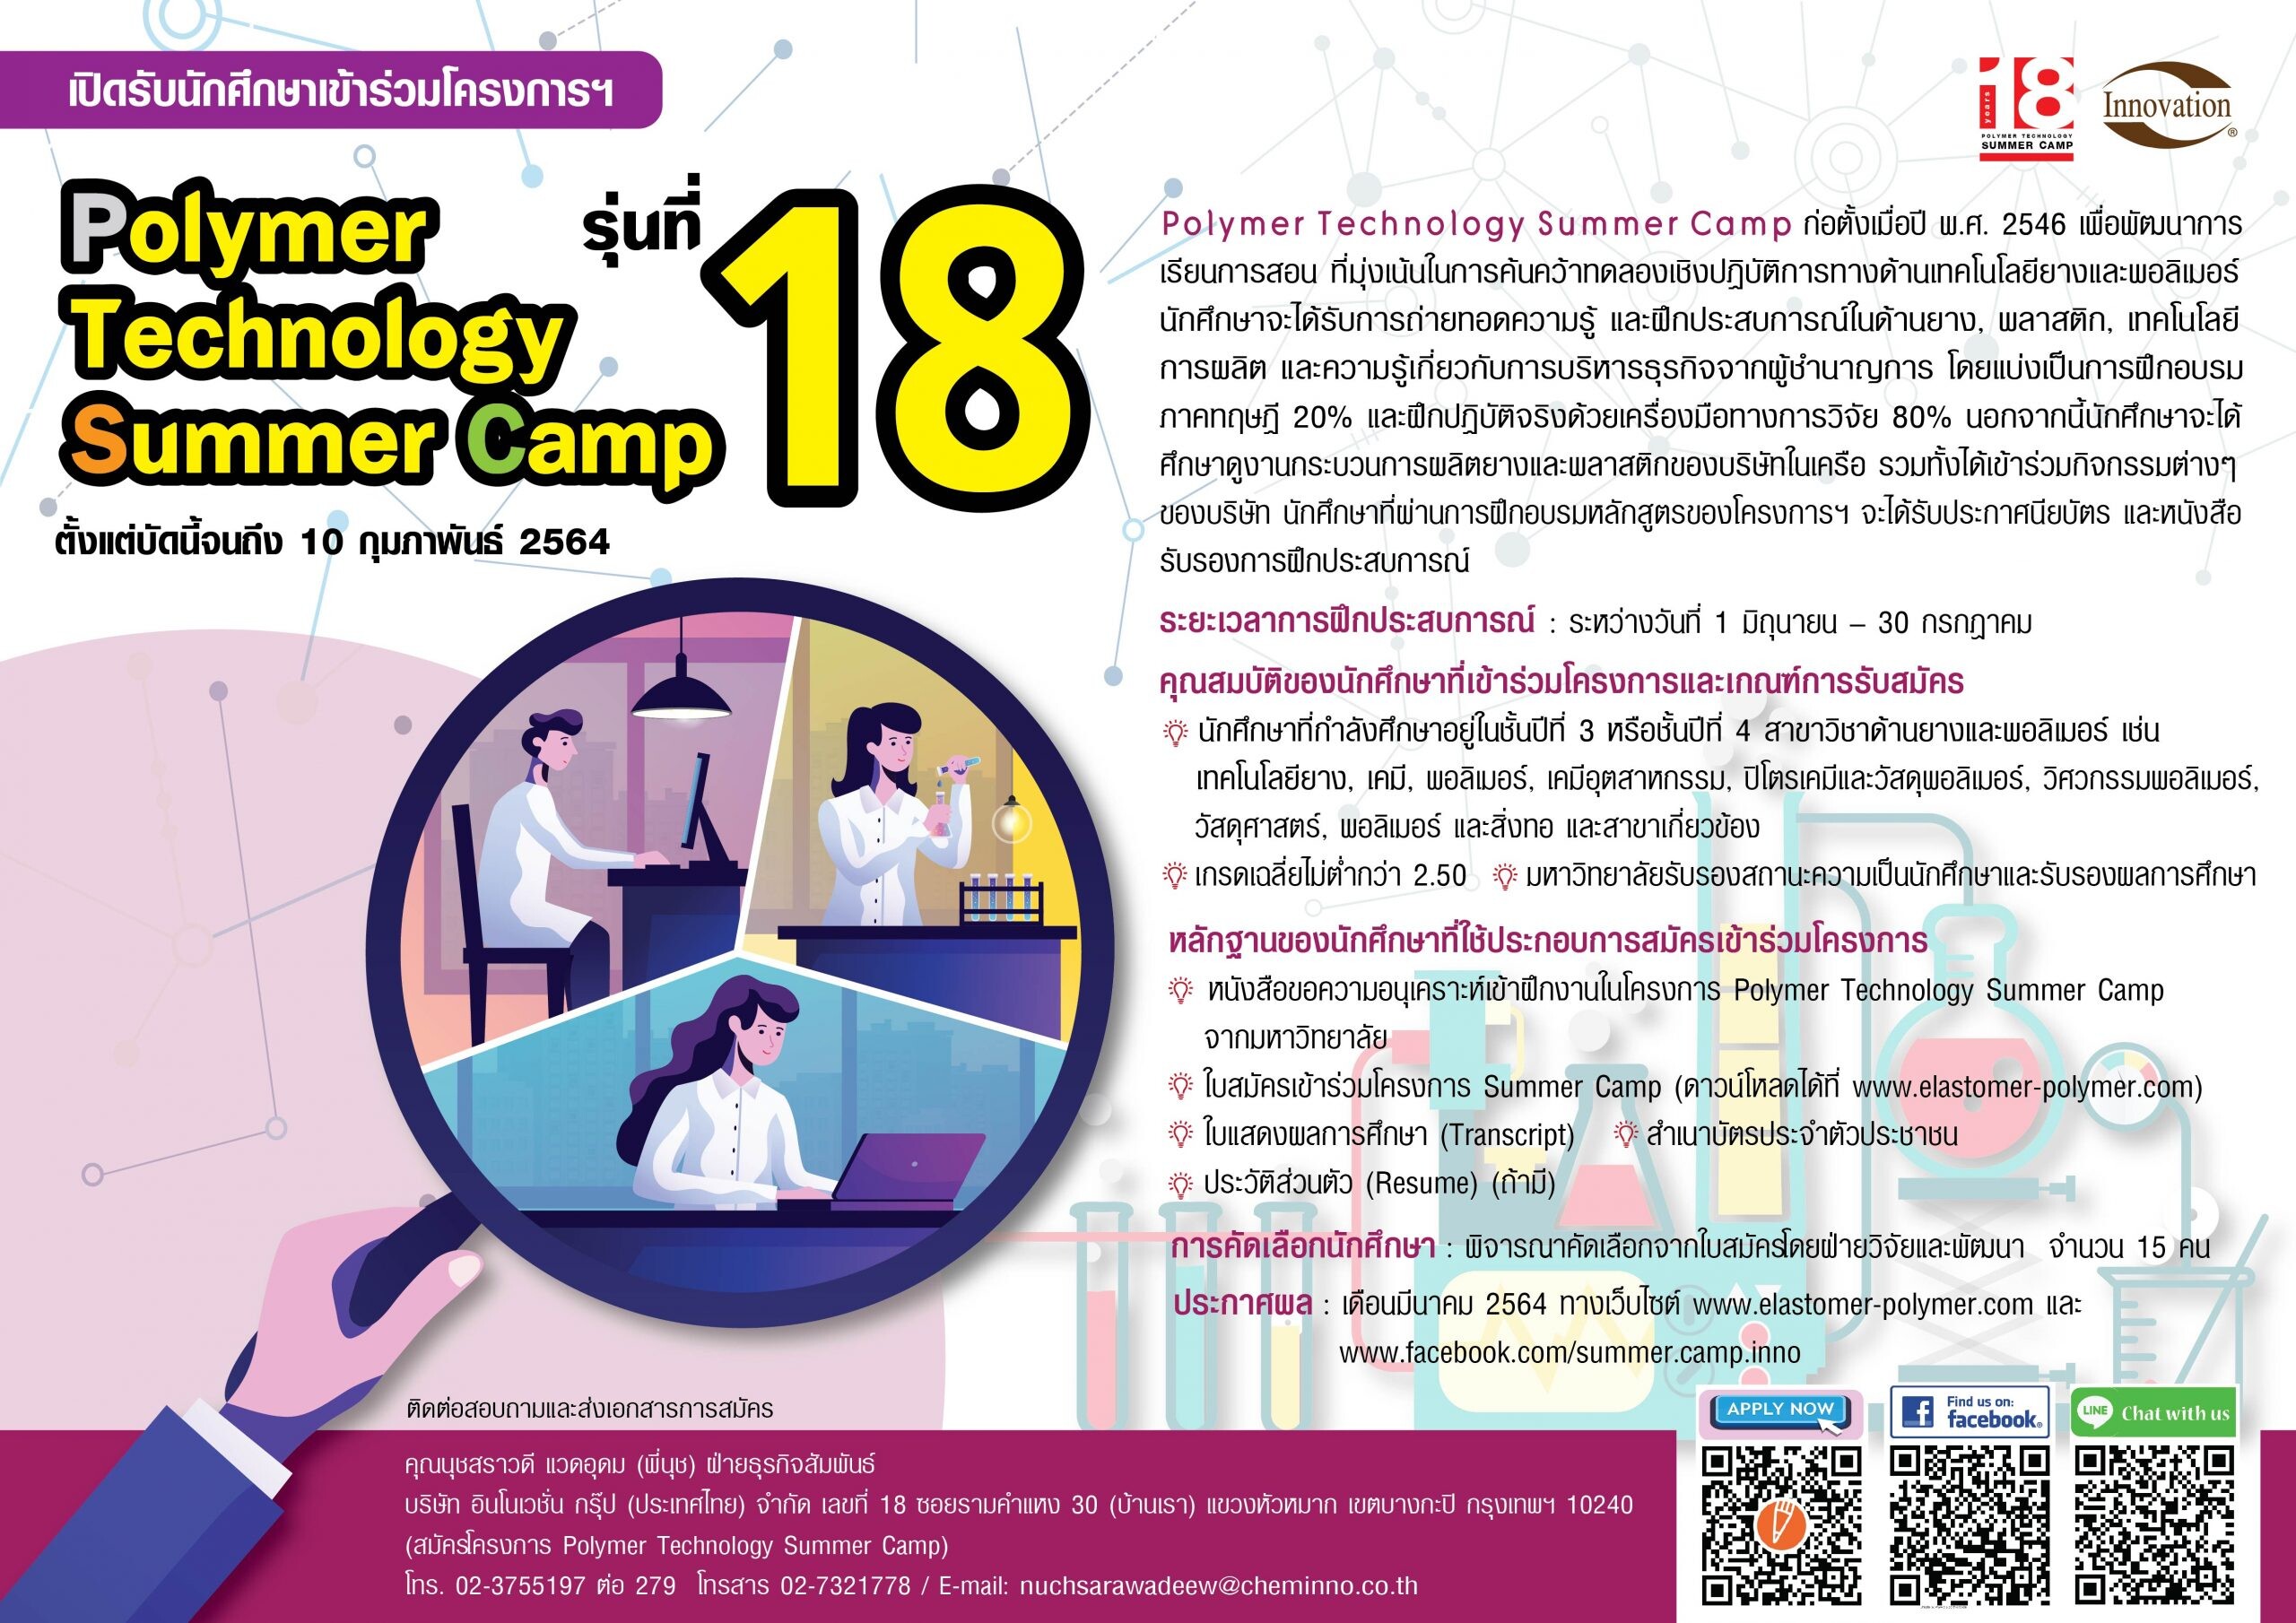 โครงการ Polymer Technology Summer Camp รุ่นที่ 18